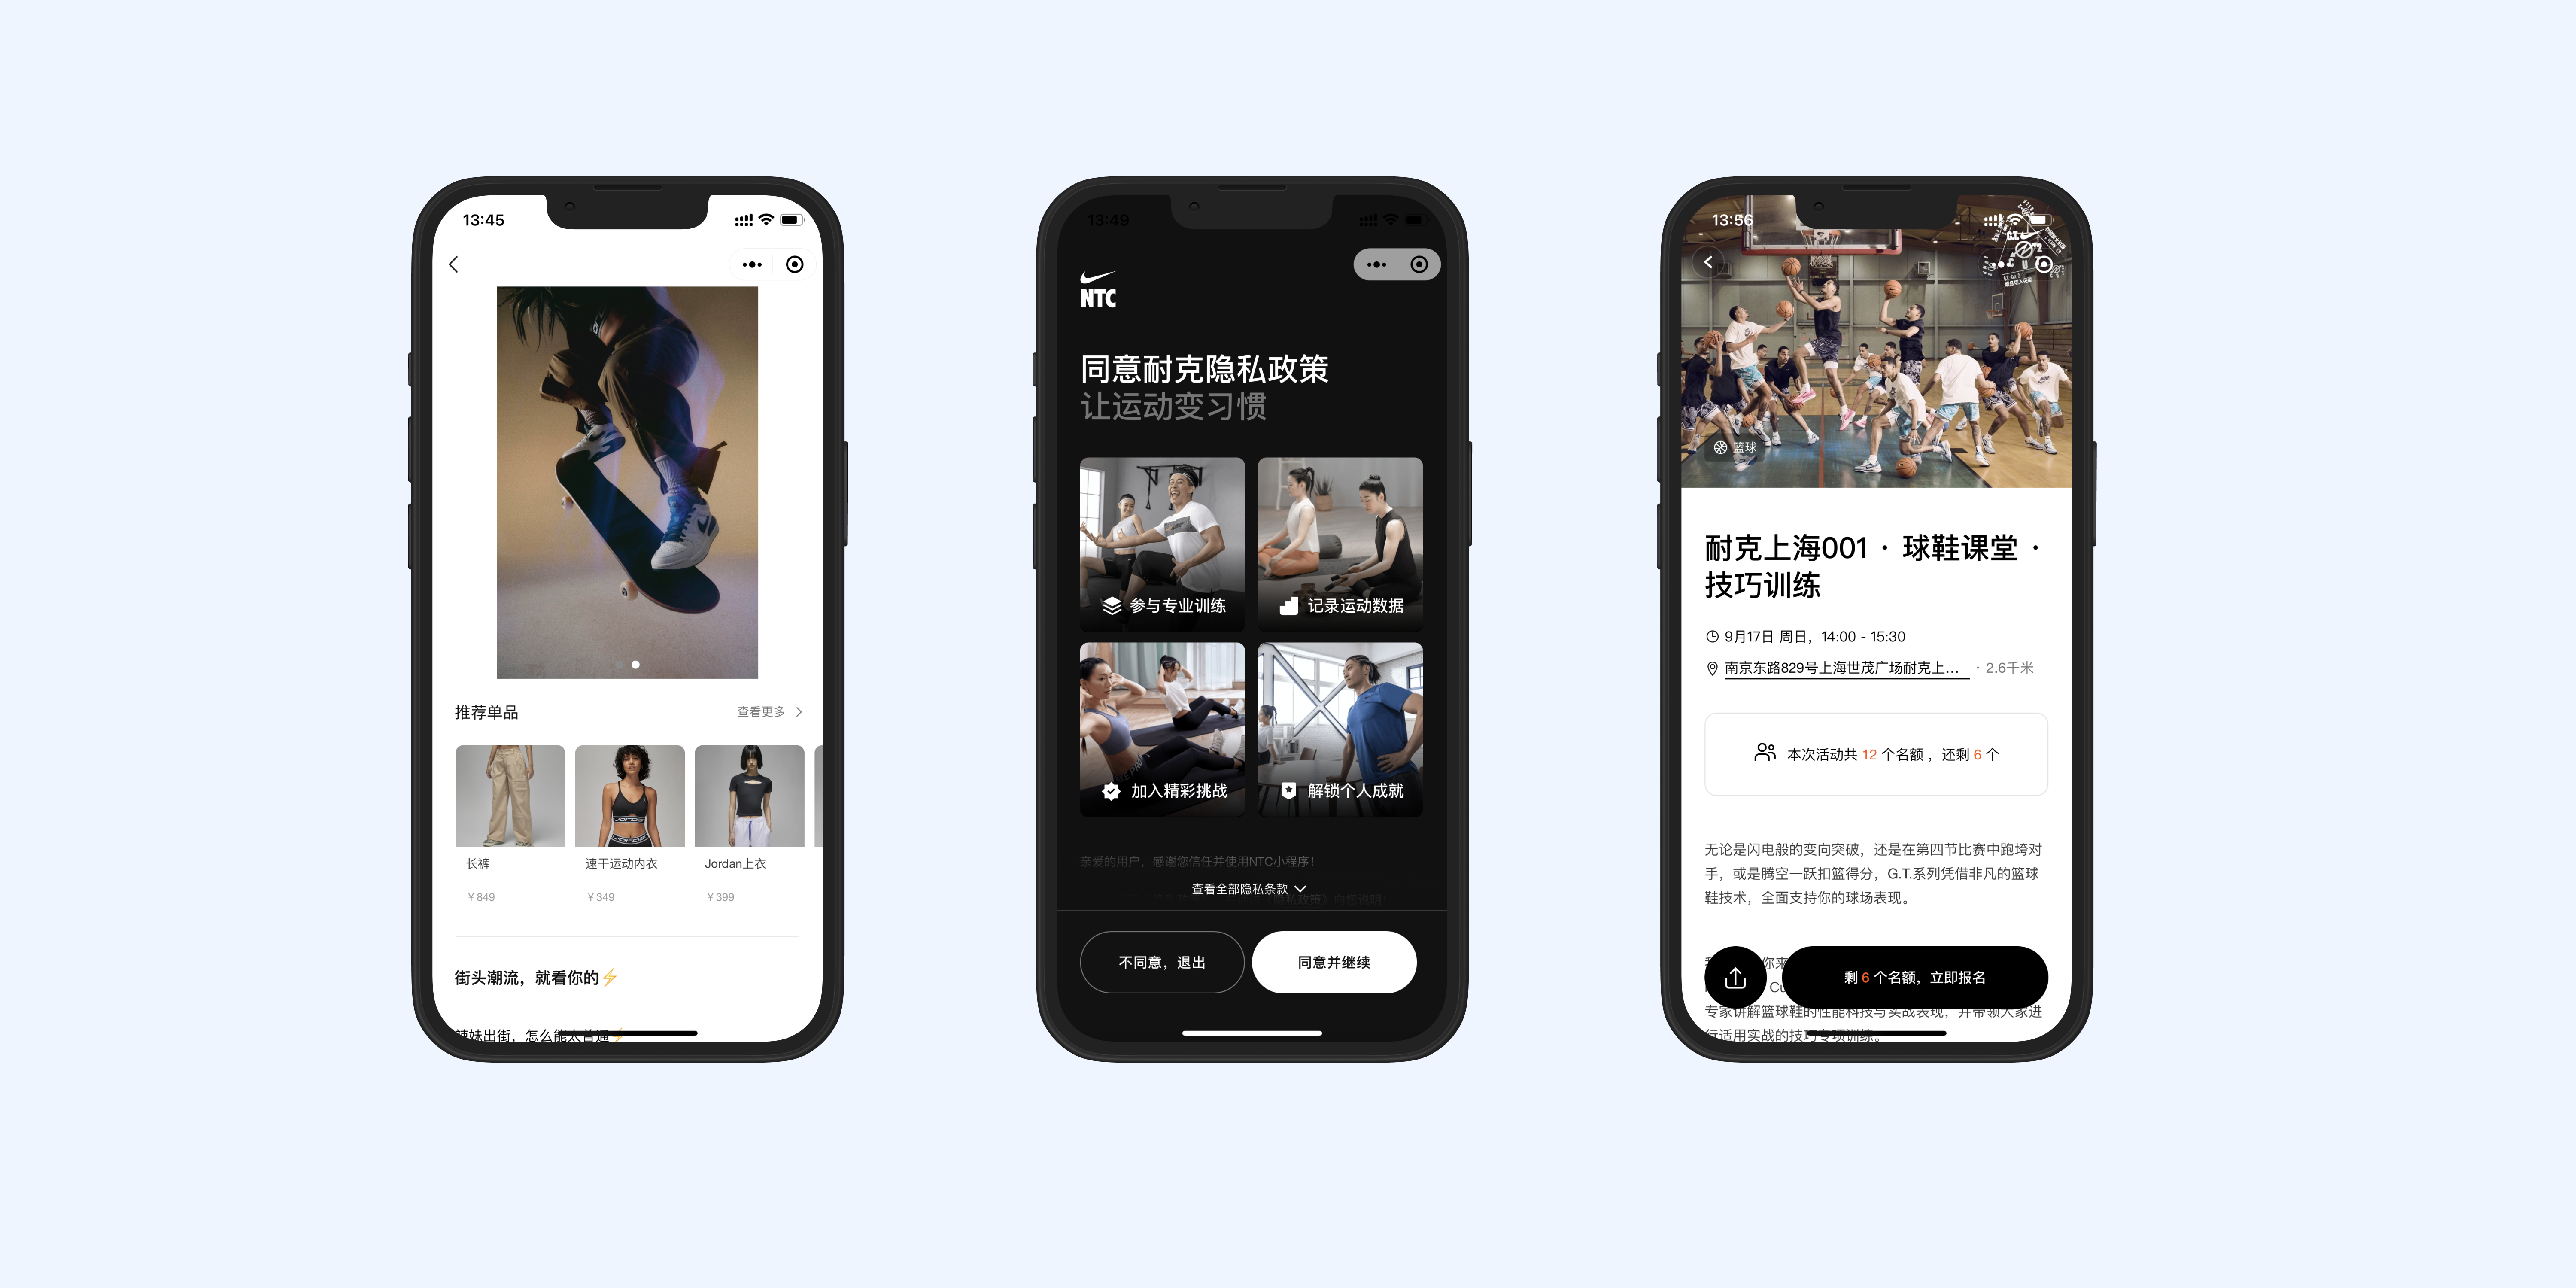 Nike WeChat mini-programs